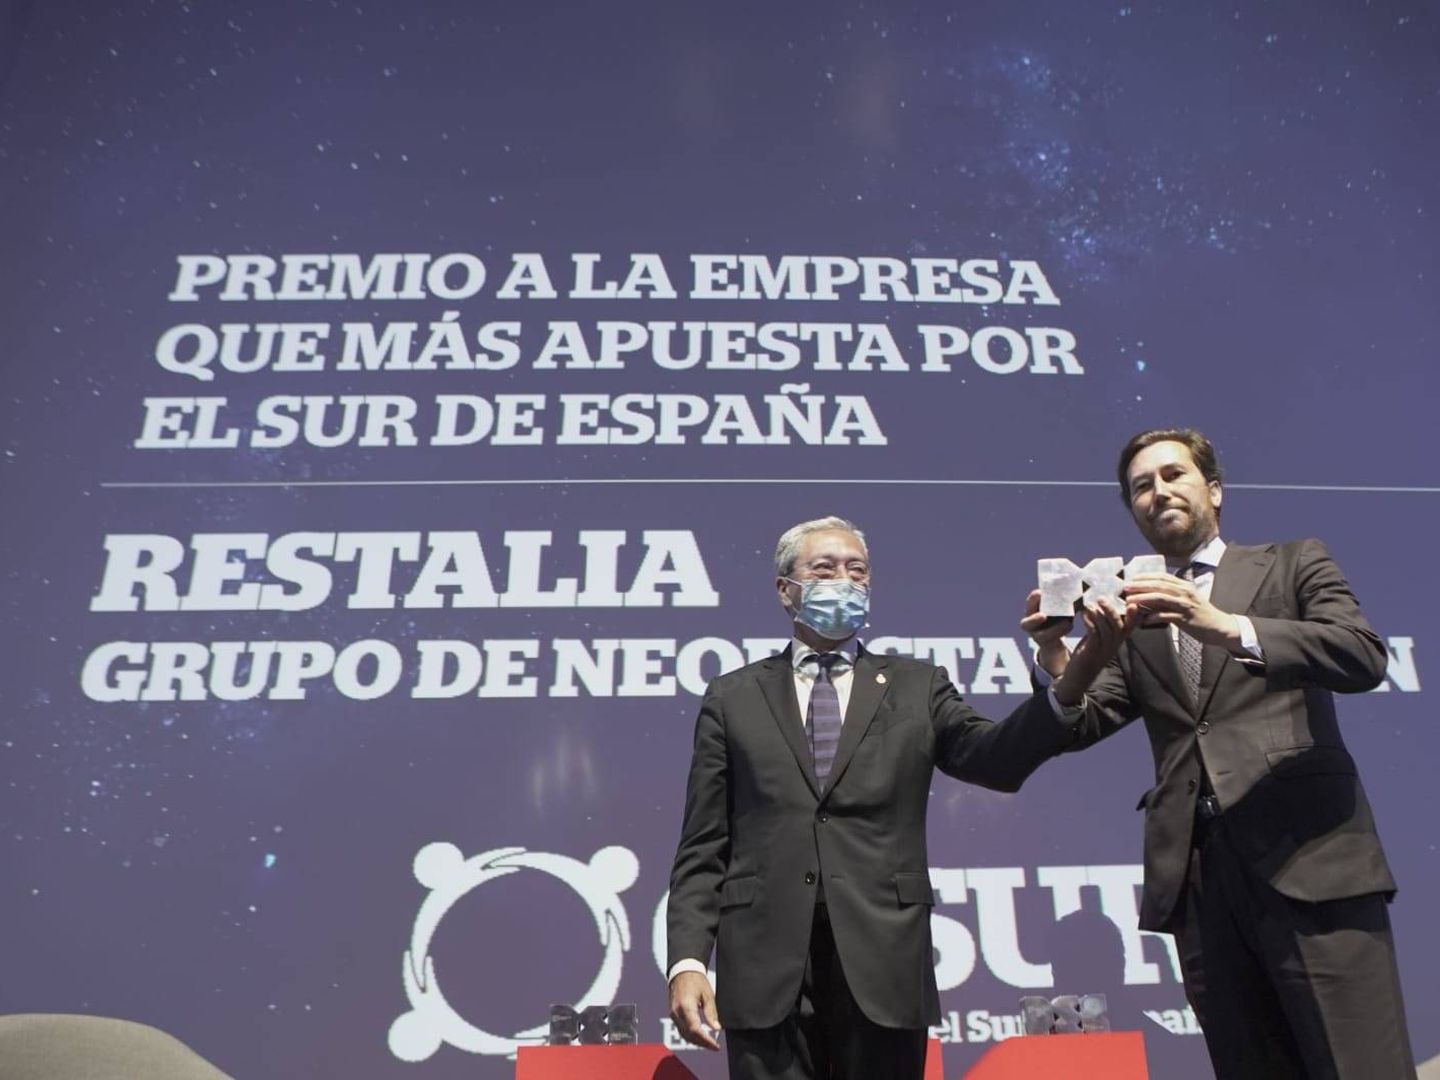 Premio al Grupo Restalia (100 Montaditos, La Sureña, etc.)